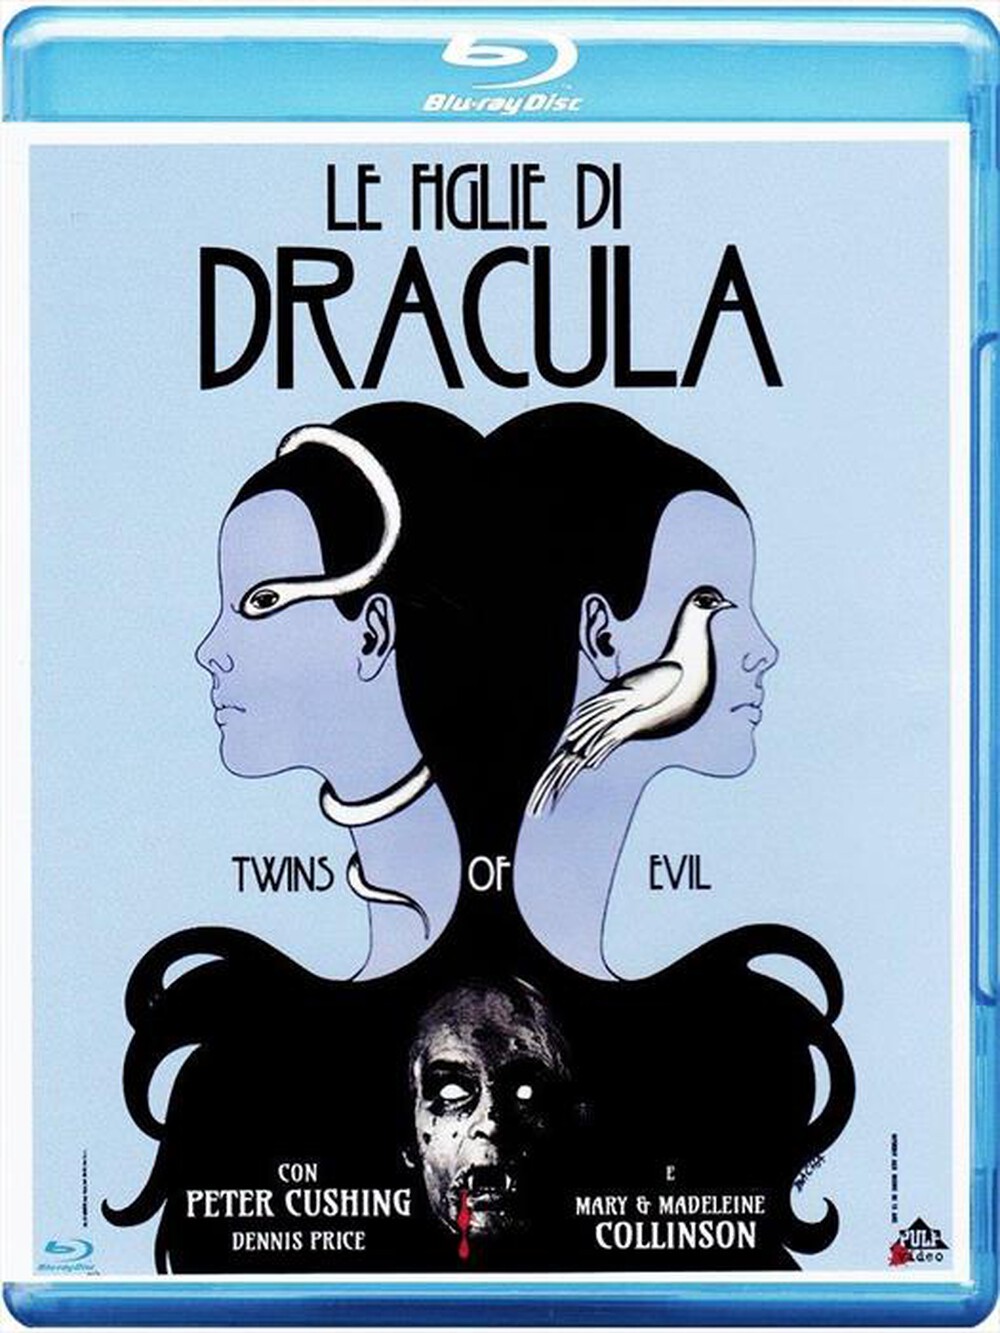 "CECCHI GORI - Figlie Di Dracula (Le)"